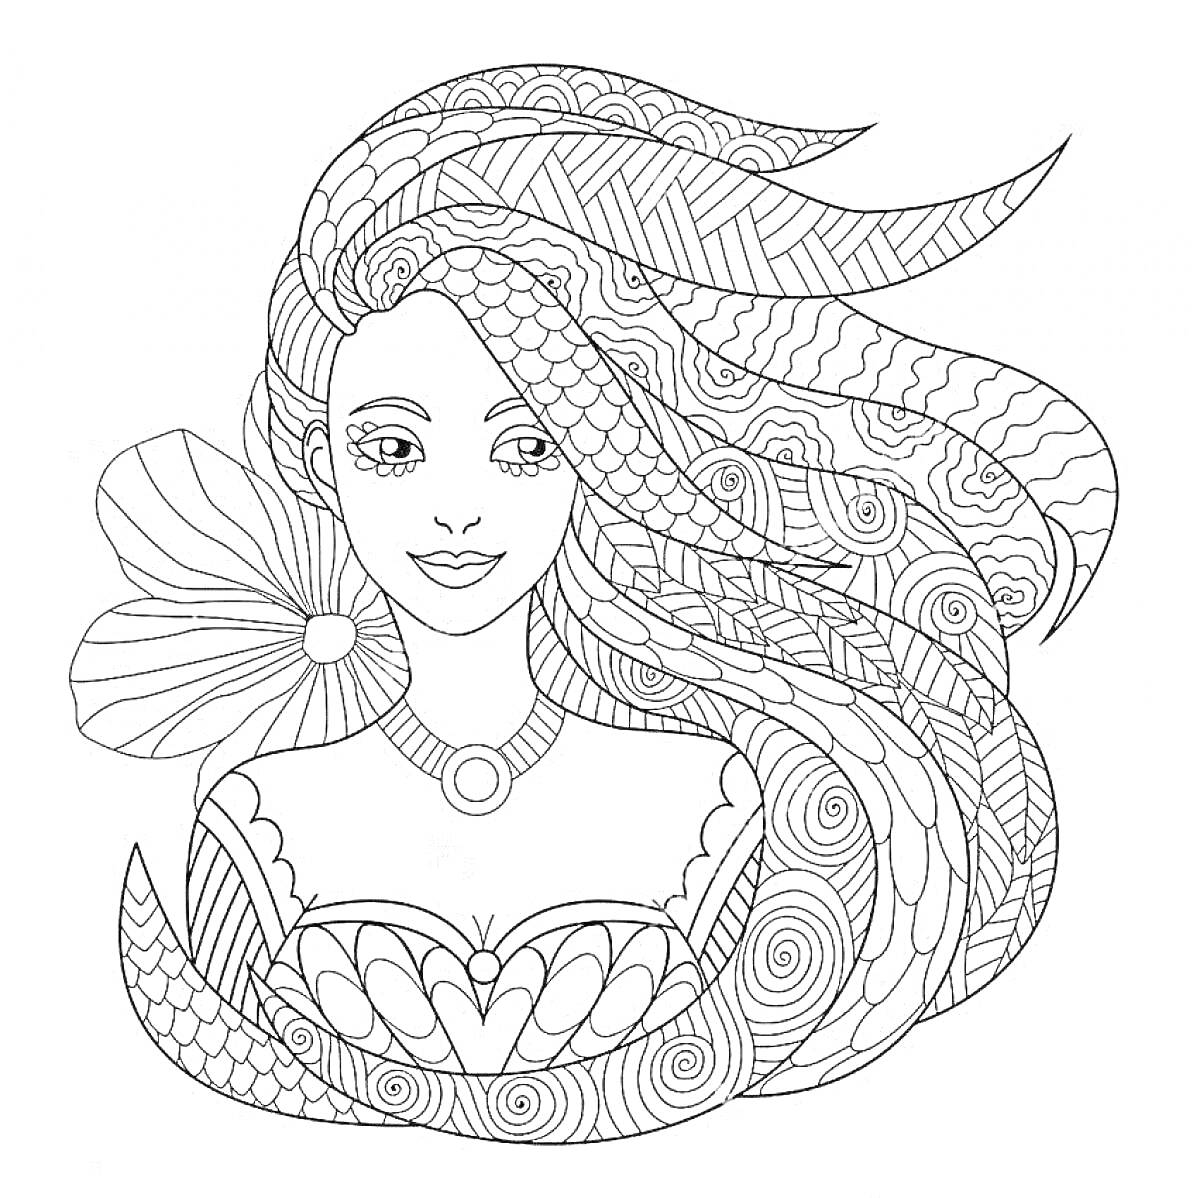 Раскраска Девушка с длинными волосами, украшенная цветком и ожерельем, узорное платье с причудливыми орнаментами.